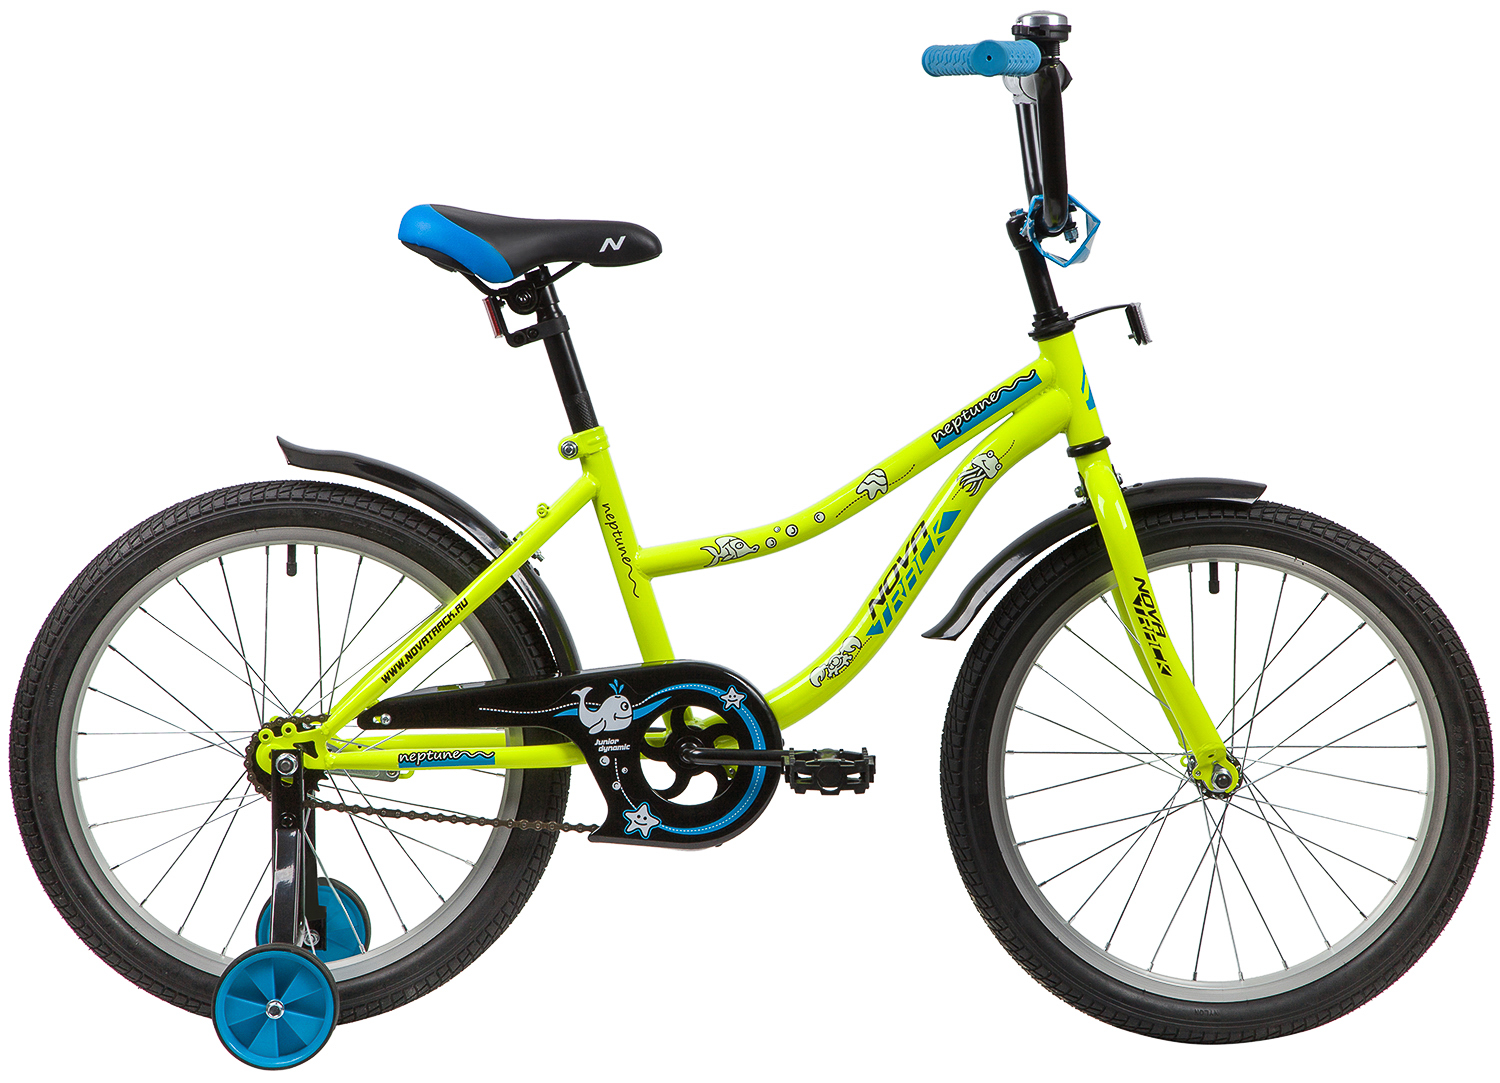  Отзывы о Детском велосипеде Novatrack Neptune 20 2020